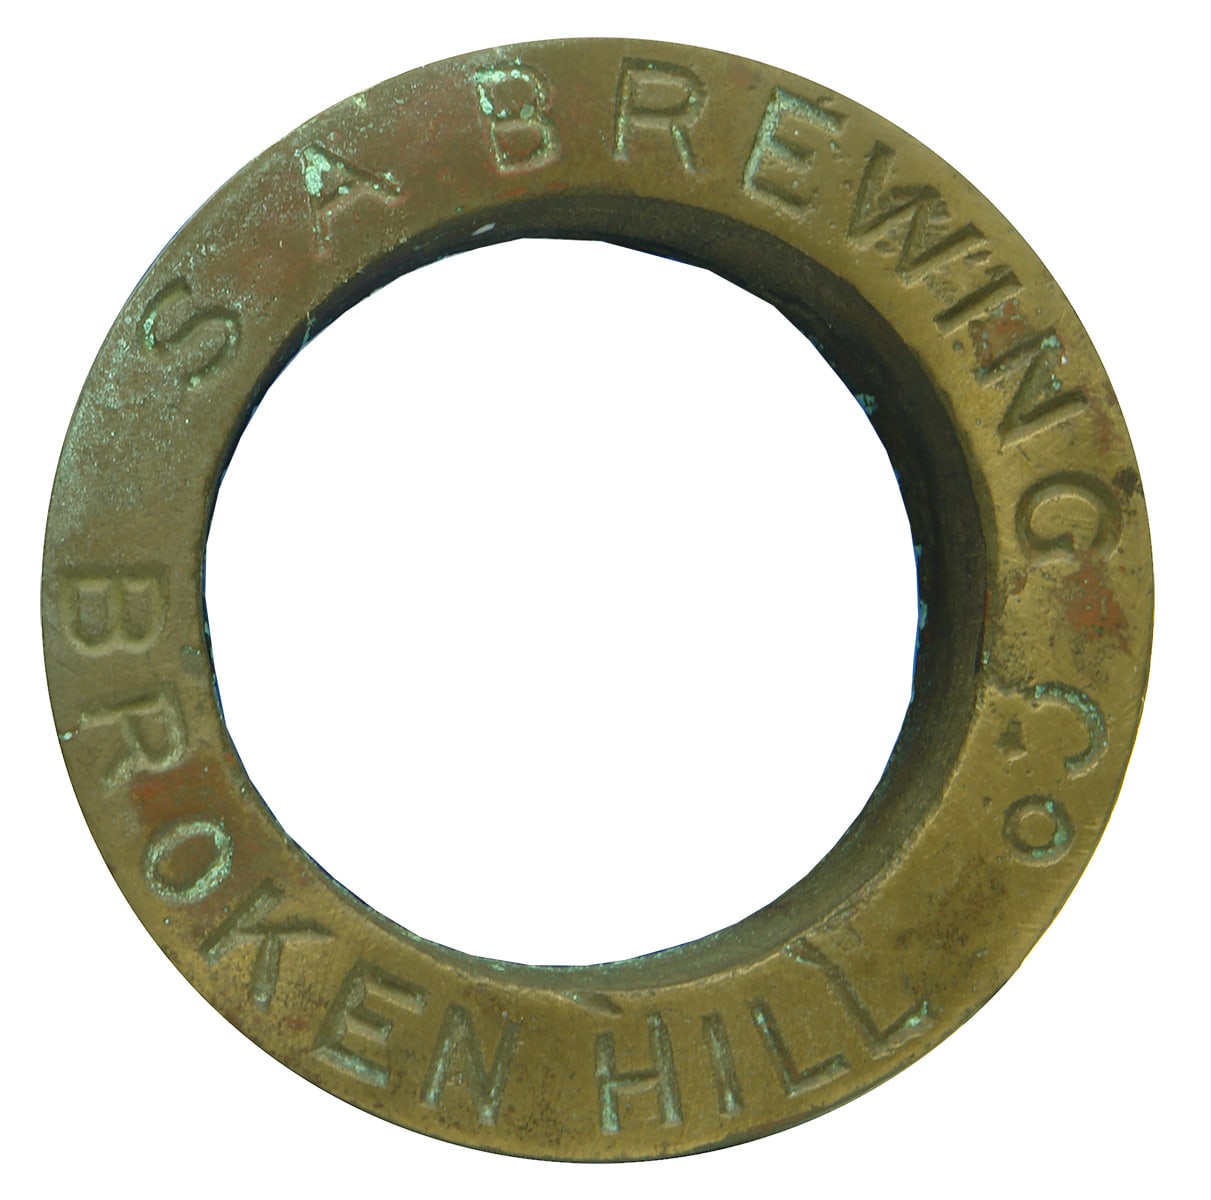 SA Brewing Co Broken Hill Brass Barrel Bung